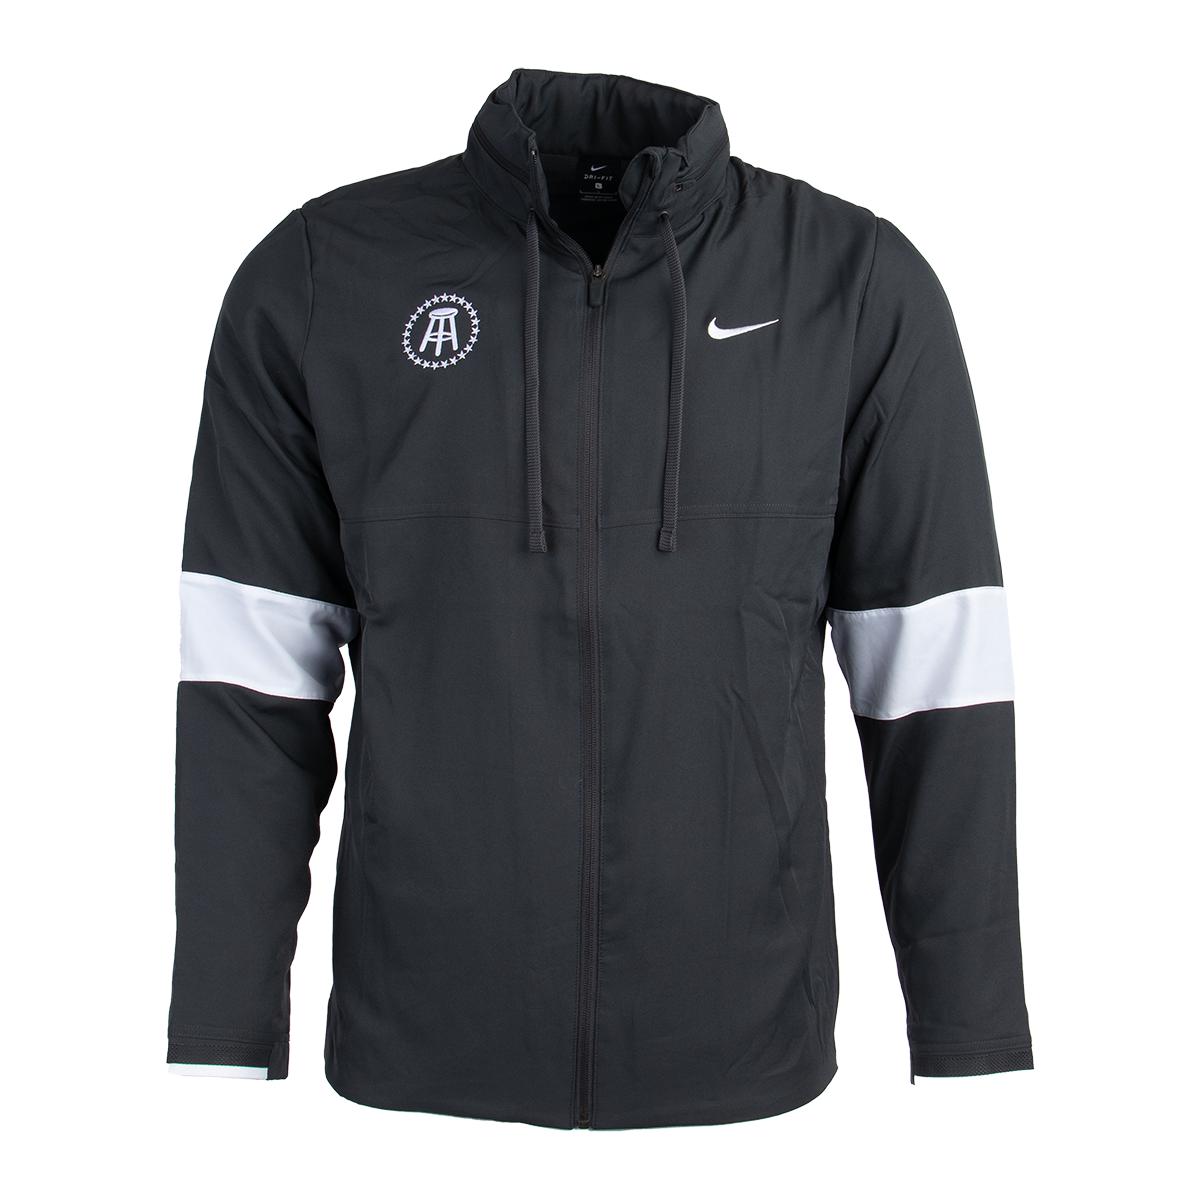 Barstool Sports Nike Dry Jacket-Jackets-Barstool Sports-Barstool Sports